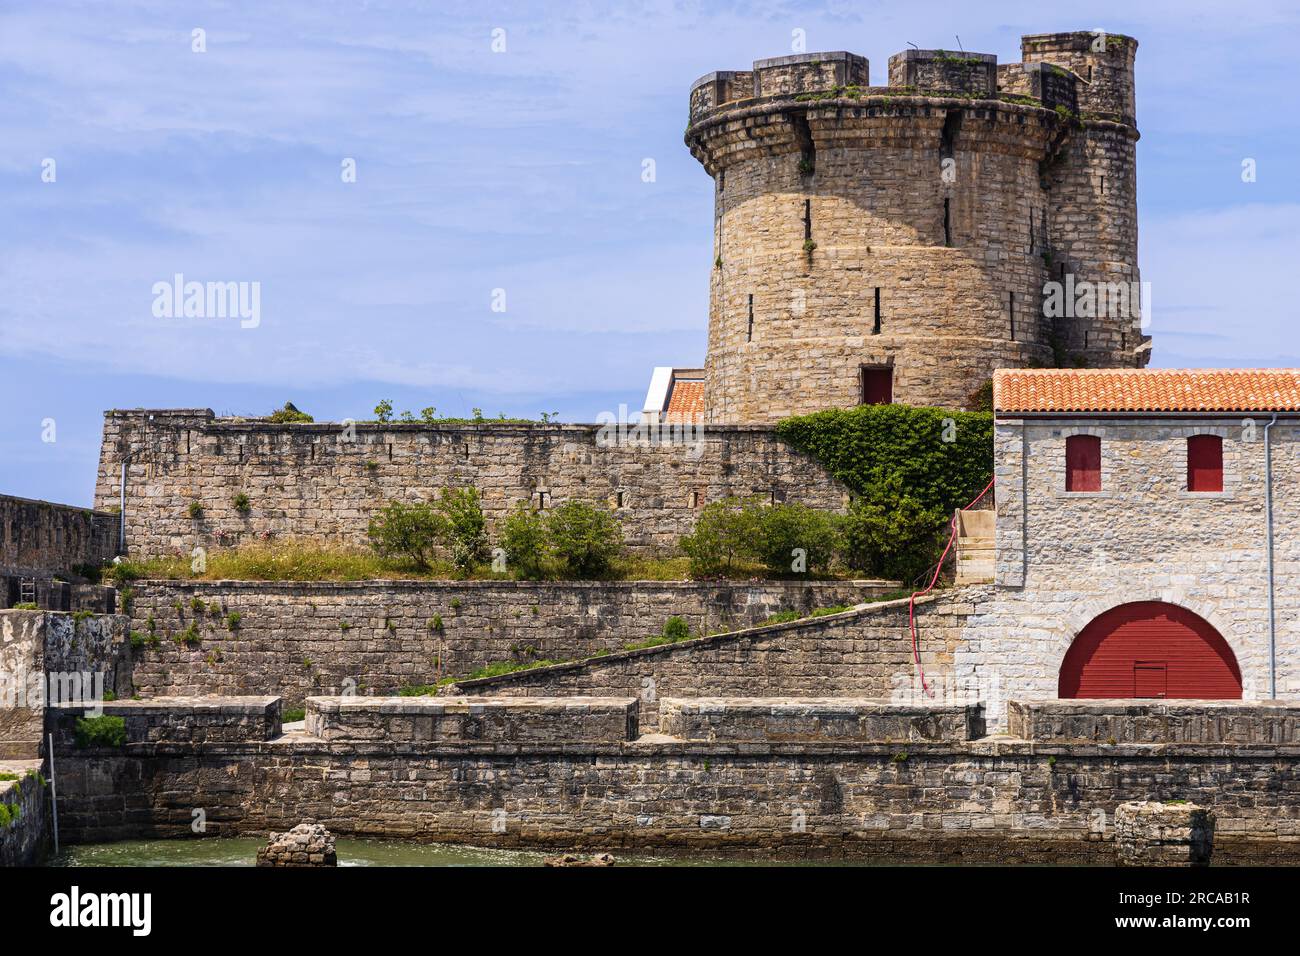 Fort de Socoa, forteresse défensive côtière historique protégeant la baie de Saint-Jean-de-Luz et le port, avec une tour circulaire. Ciboure, France Banque D'Images